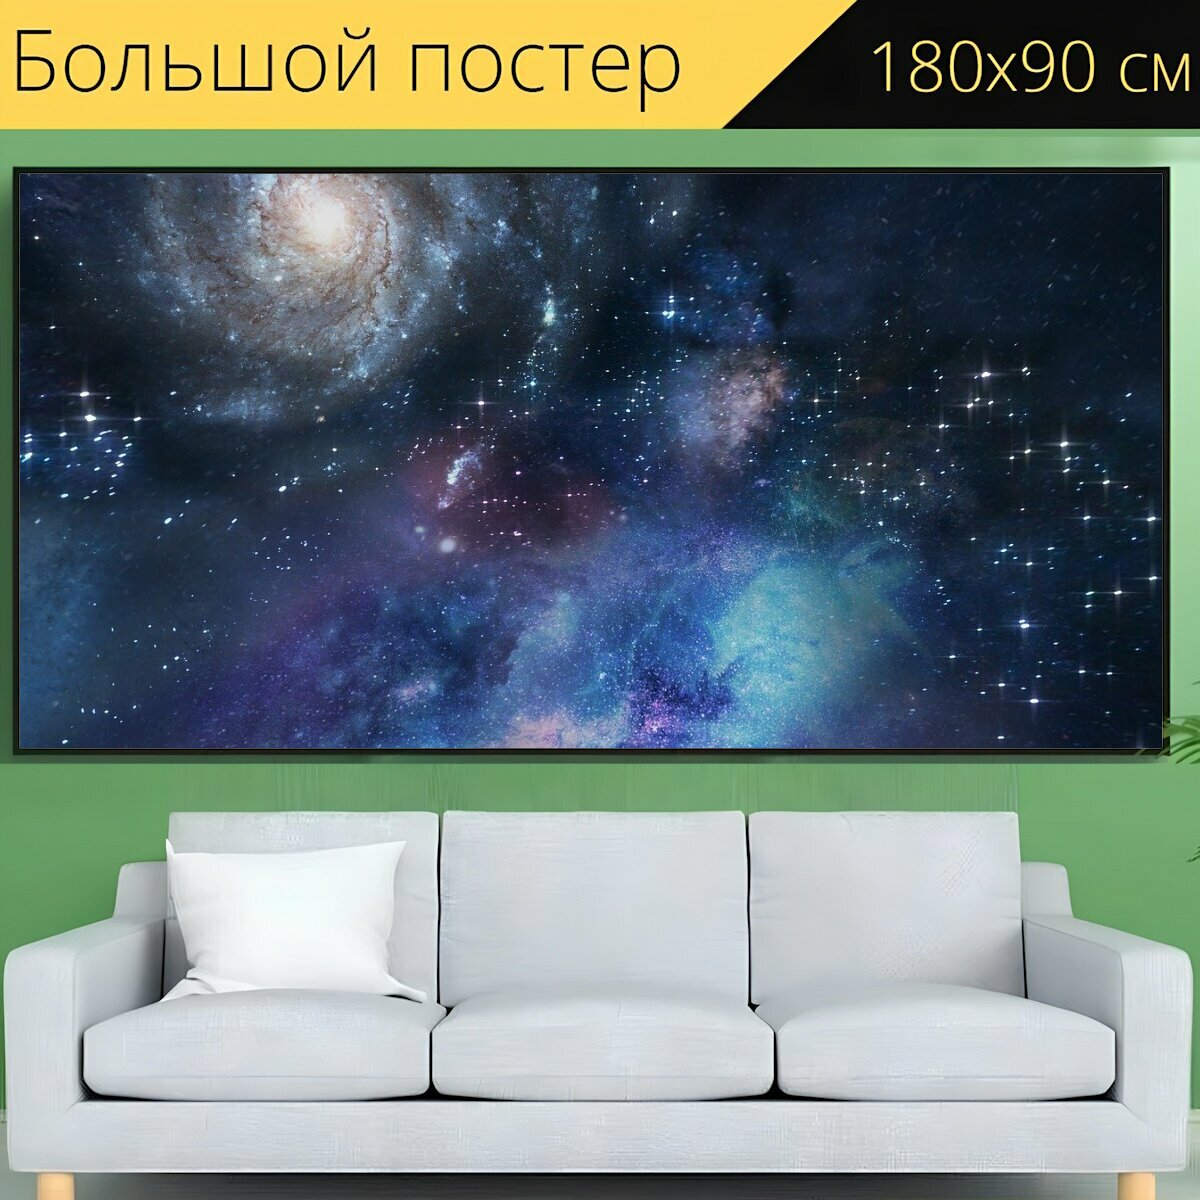 Большой постер "Пространство, глубокий космос, галактика" 180 x 90 см. для интерьера